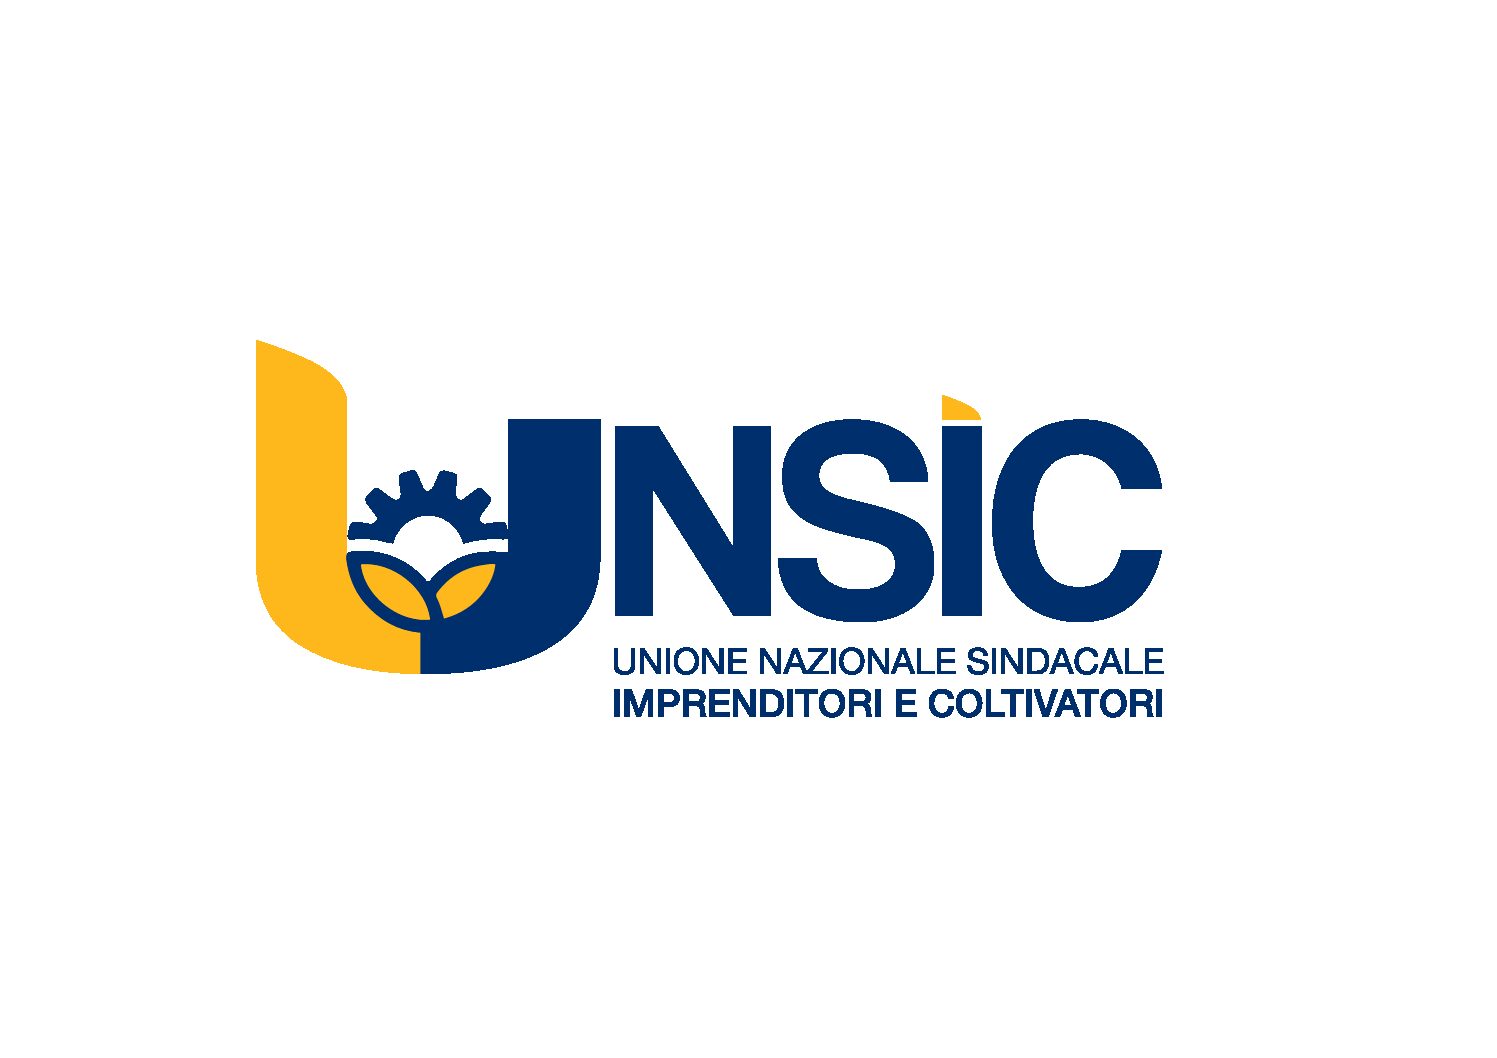 UNSIC - Unione Nazionale Sindacale Imprenditori e Coltivatori